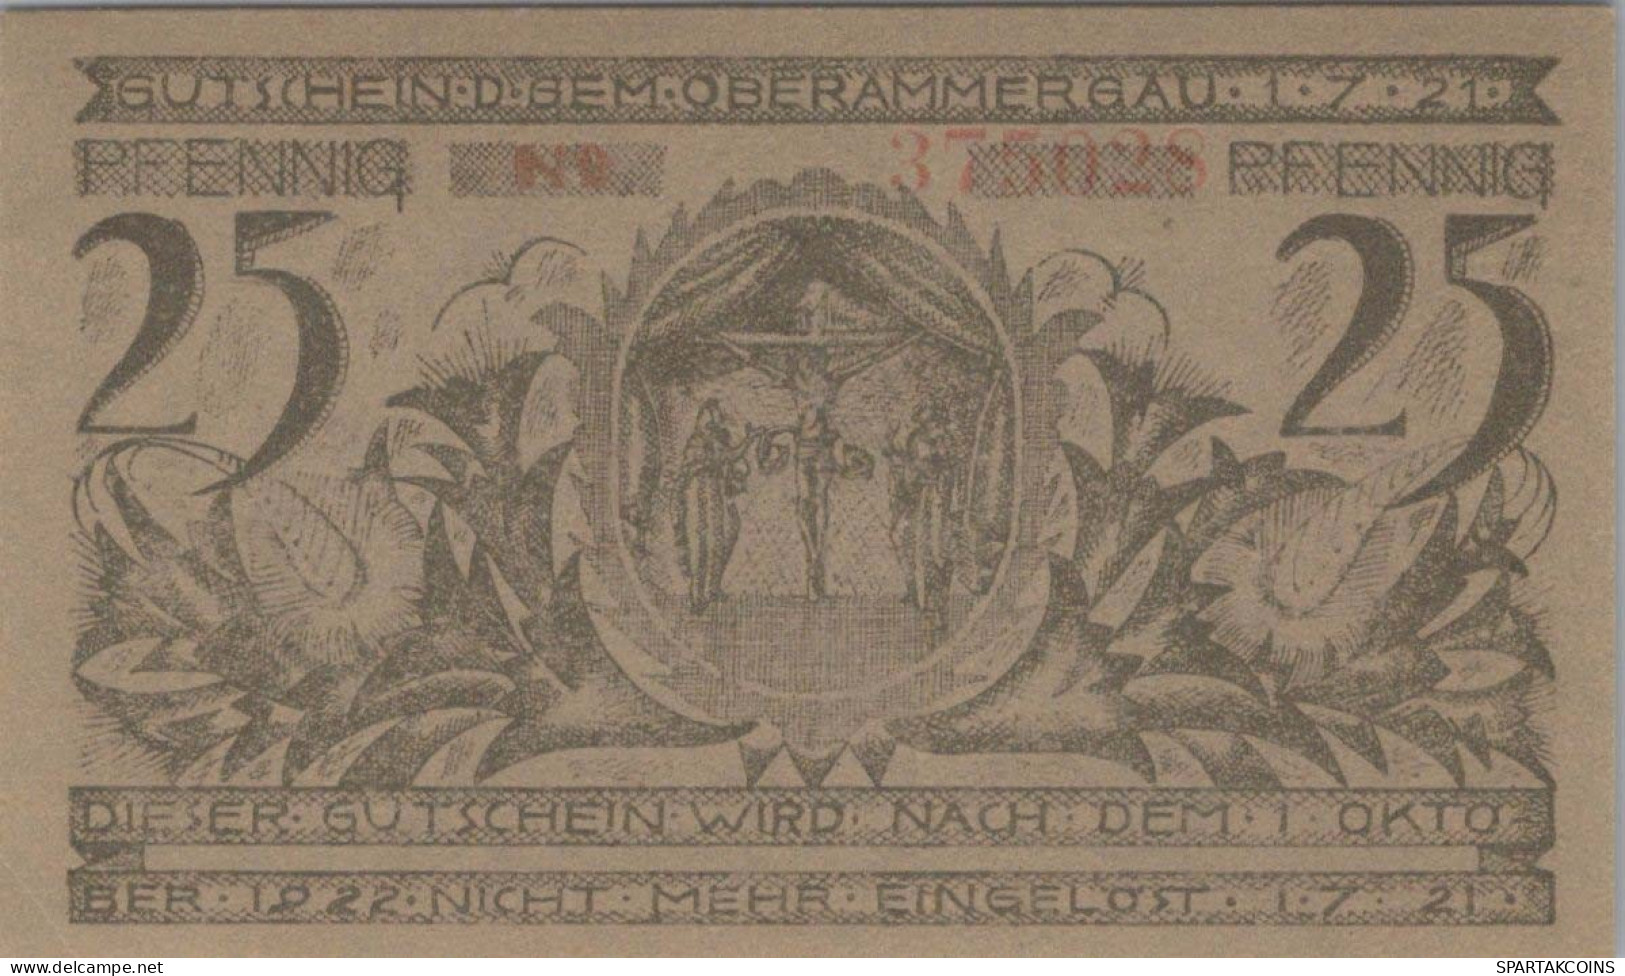 25 PFENNIG 1921 Stadt OBERAMMERGAU Bavaria UNC DEUTSCHLAND Notgeld #PH269 - [11] Local Banknote Issues